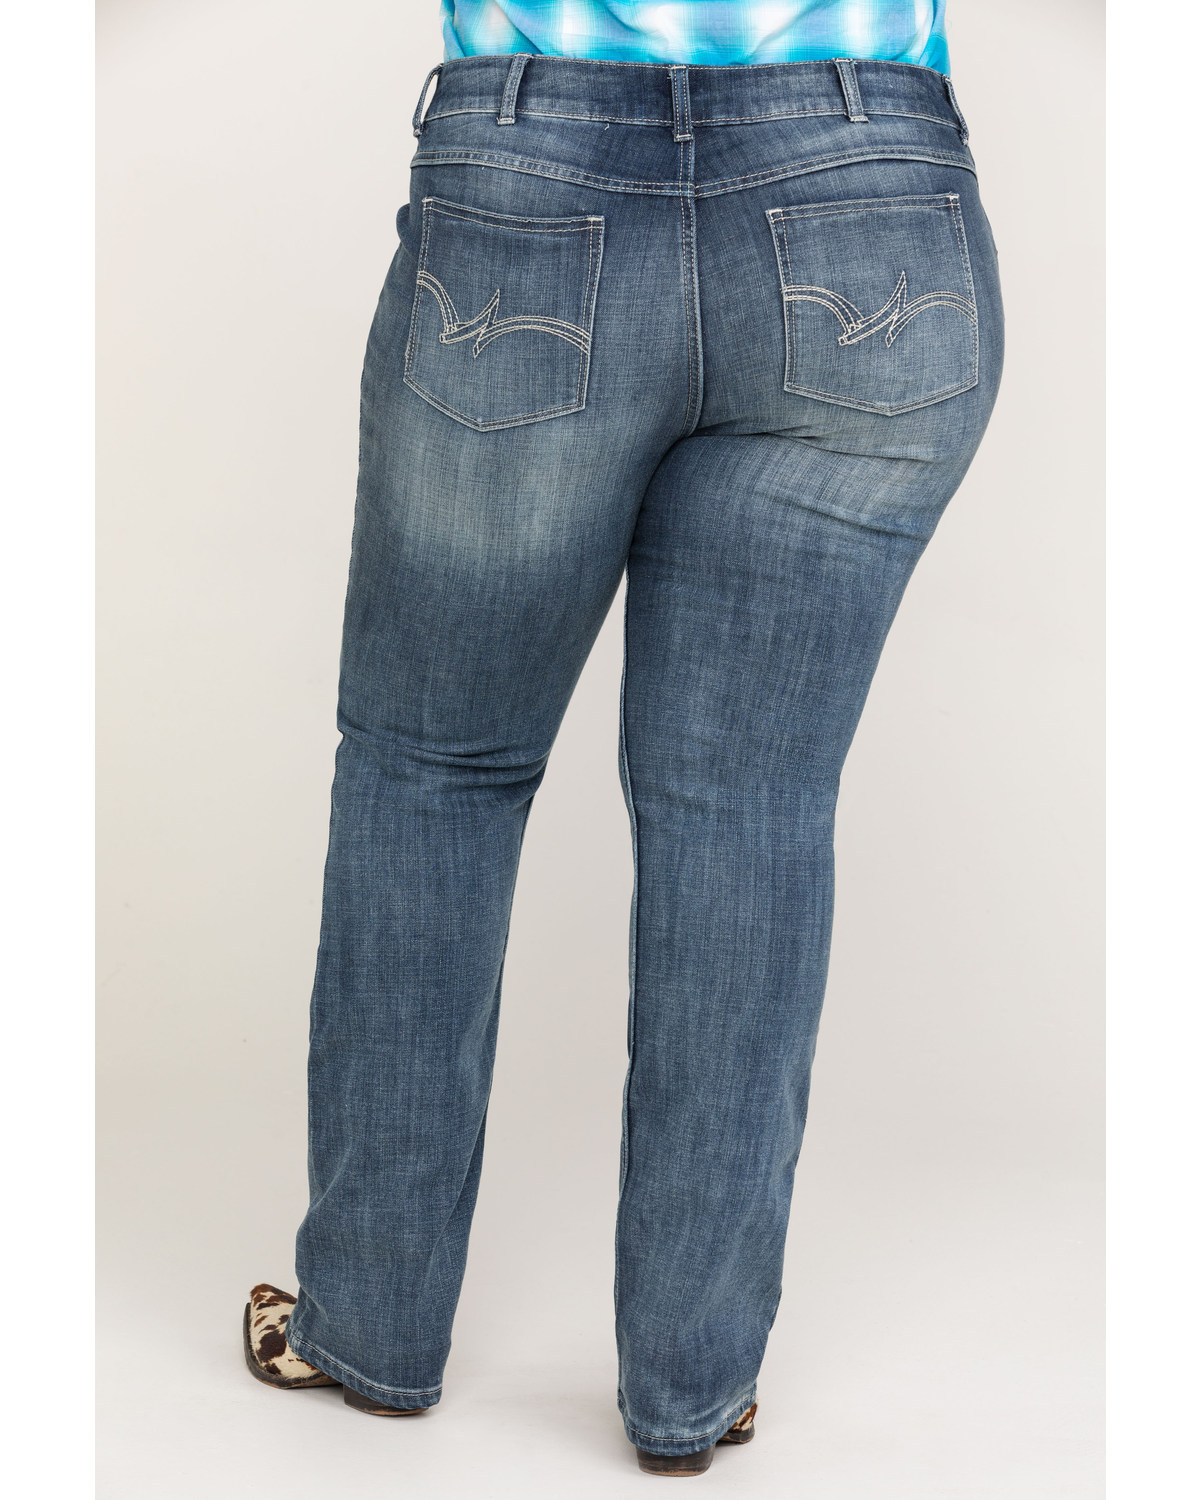 Wrangler Women's Straight Leg Jeans - Plus